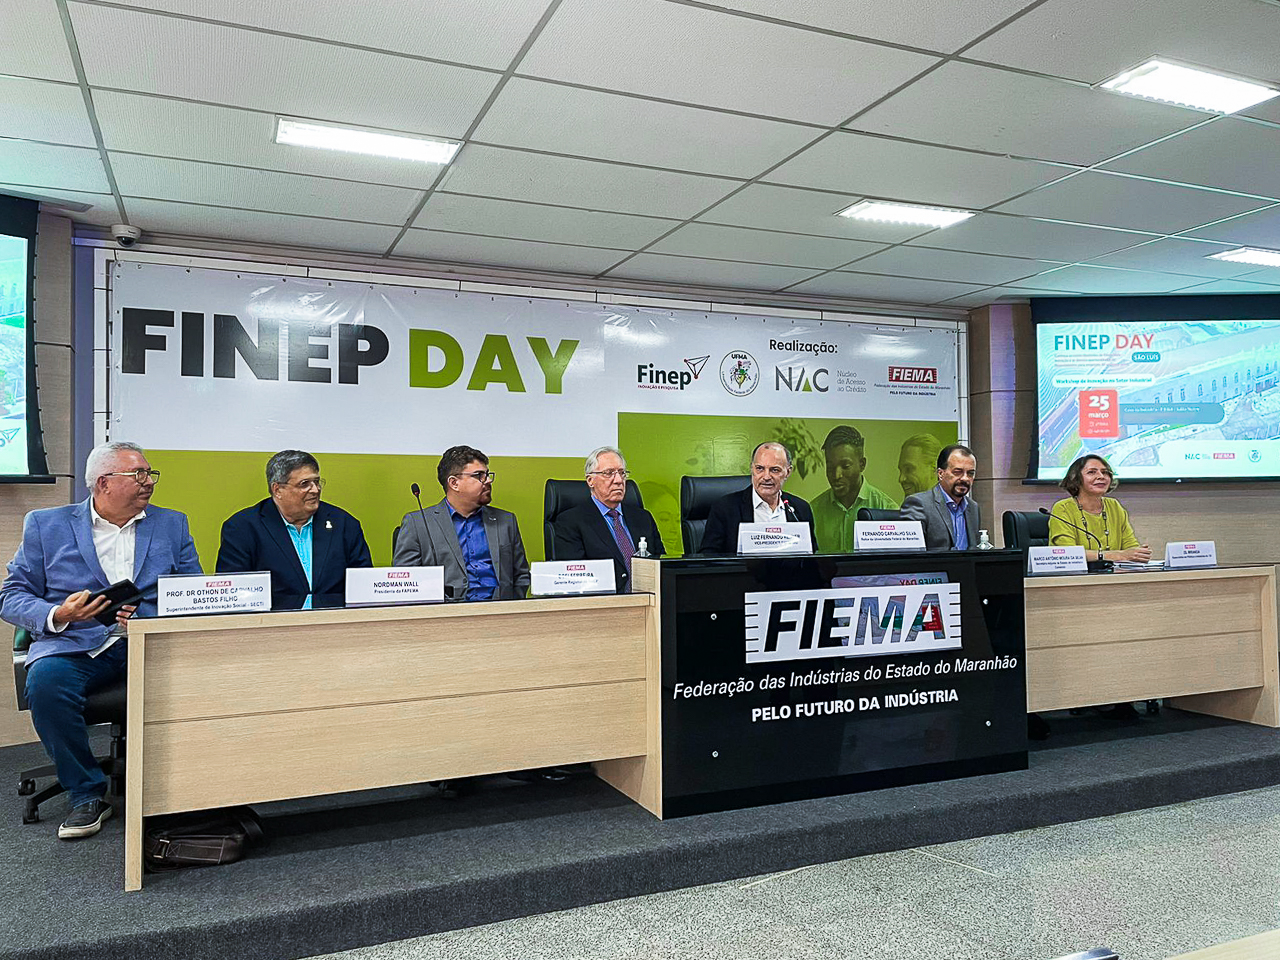 Finep Day: UFMA lança plataforma “Conheça UFMA” que aproxima a Universidade do setor produtivo